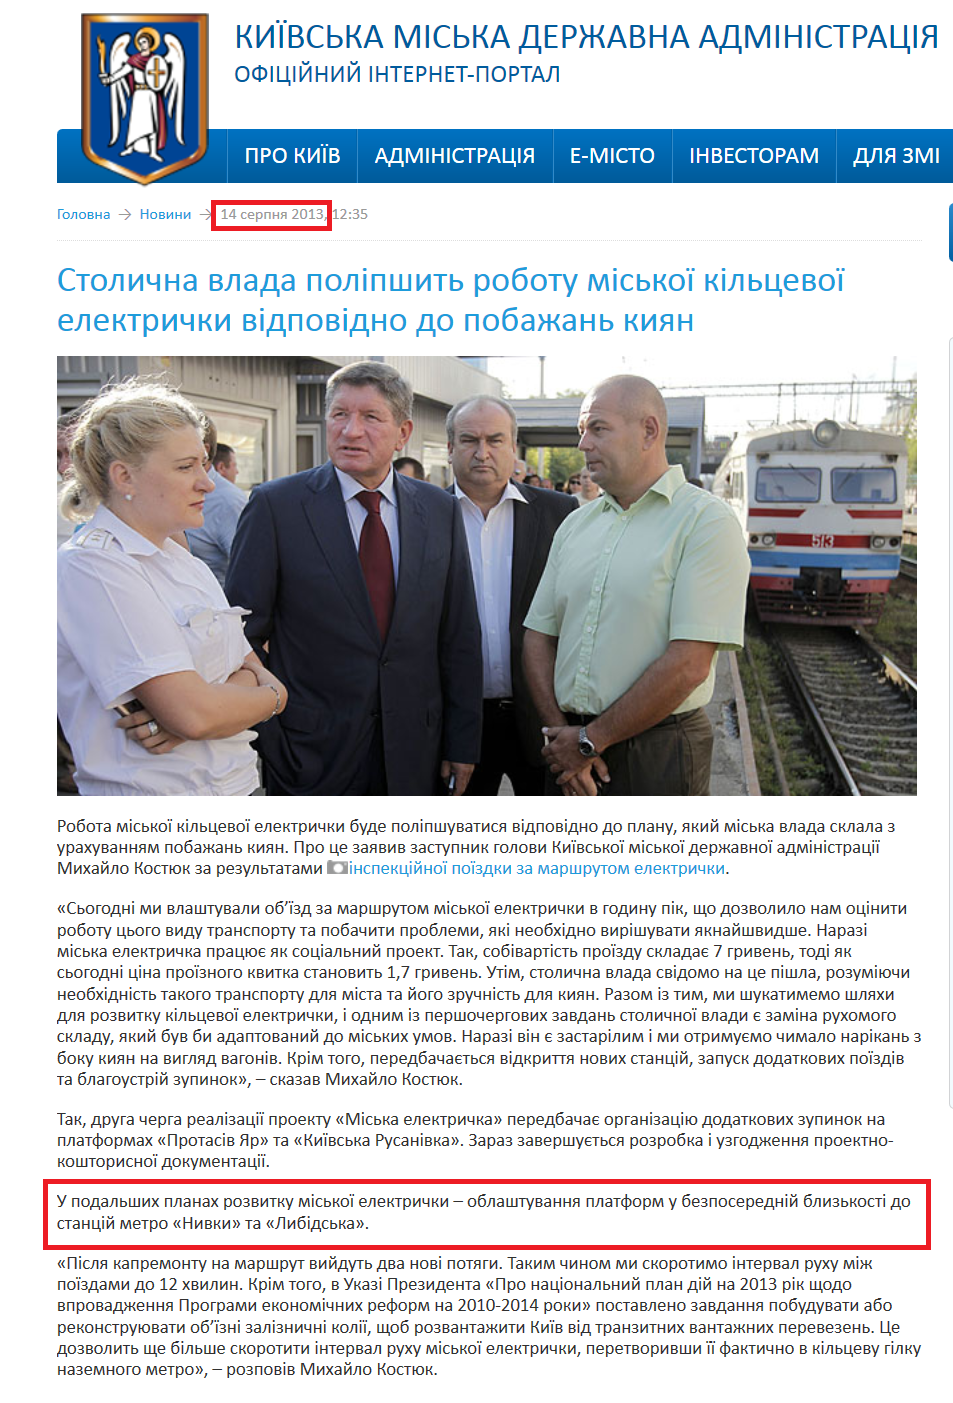 http://kievcity.gov.ua/news/9407.html